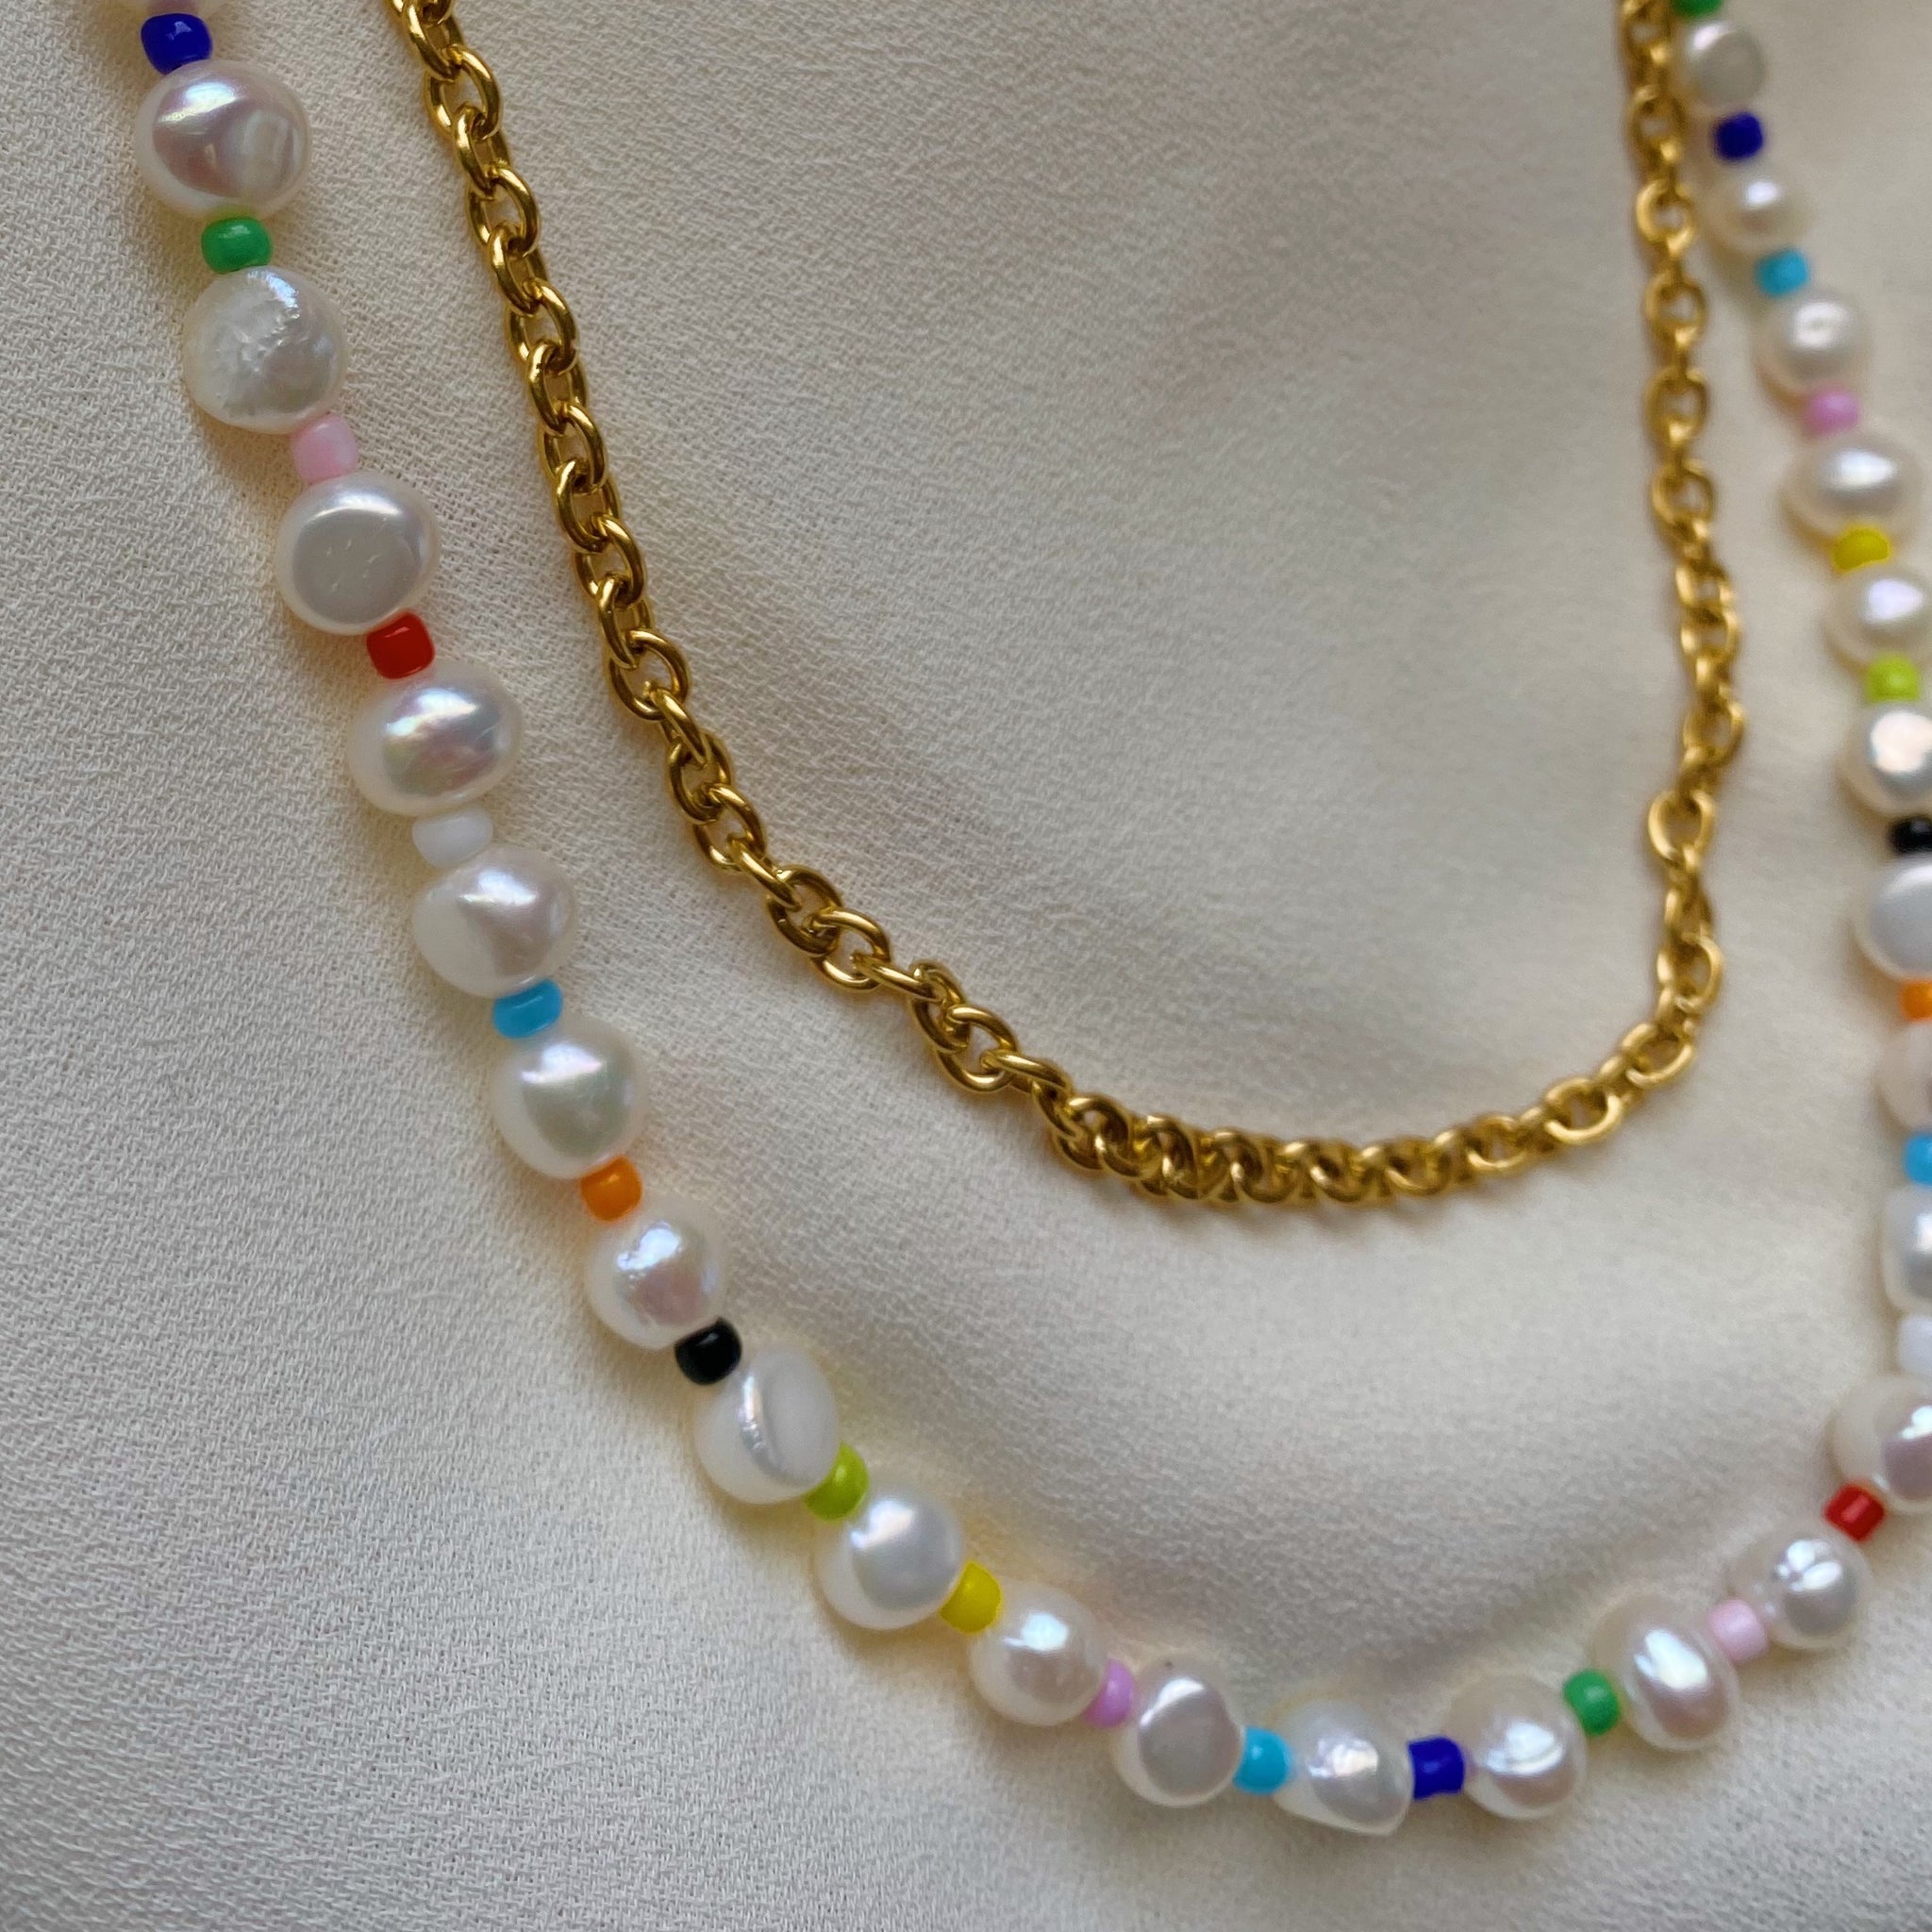 Pearl bead necklaces in bulk - Borneobe.com +62 856 450 47275  (Cell.WhatsApp)